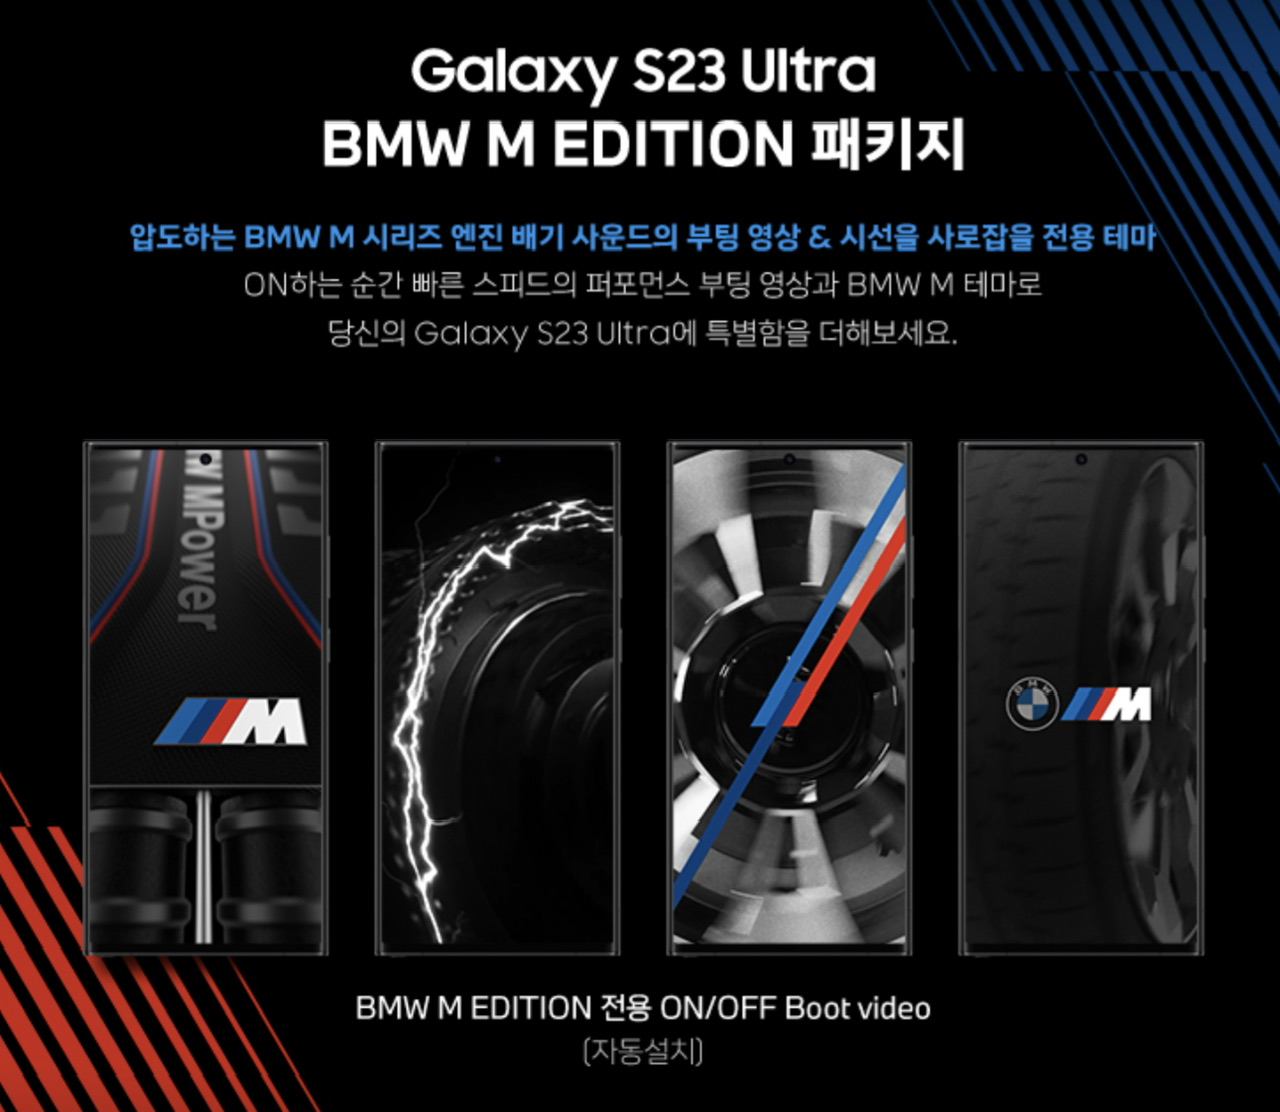 Samsung Galaxy S23 Ultra BMW M Edition dilancarkan- terhad 1,000 unit sahaja 9